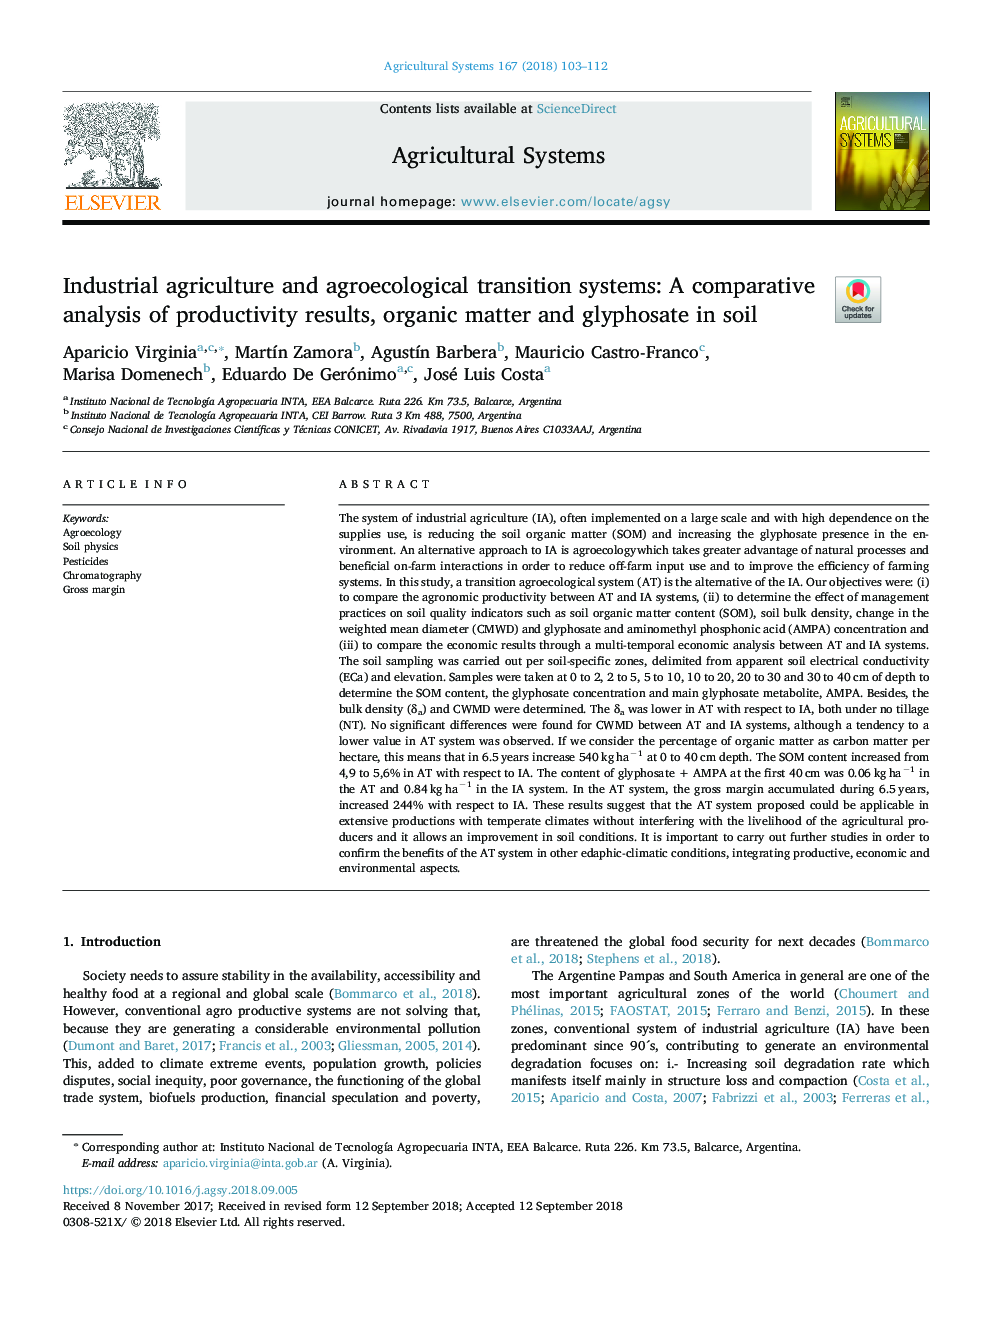 سیستم های انتقال کشاورزی صنعتی و کشاورزی: ​​تجزیه و تحلیل مقایسهای نتایج بهره وری، مواد آلی و گلای فسات در خاک